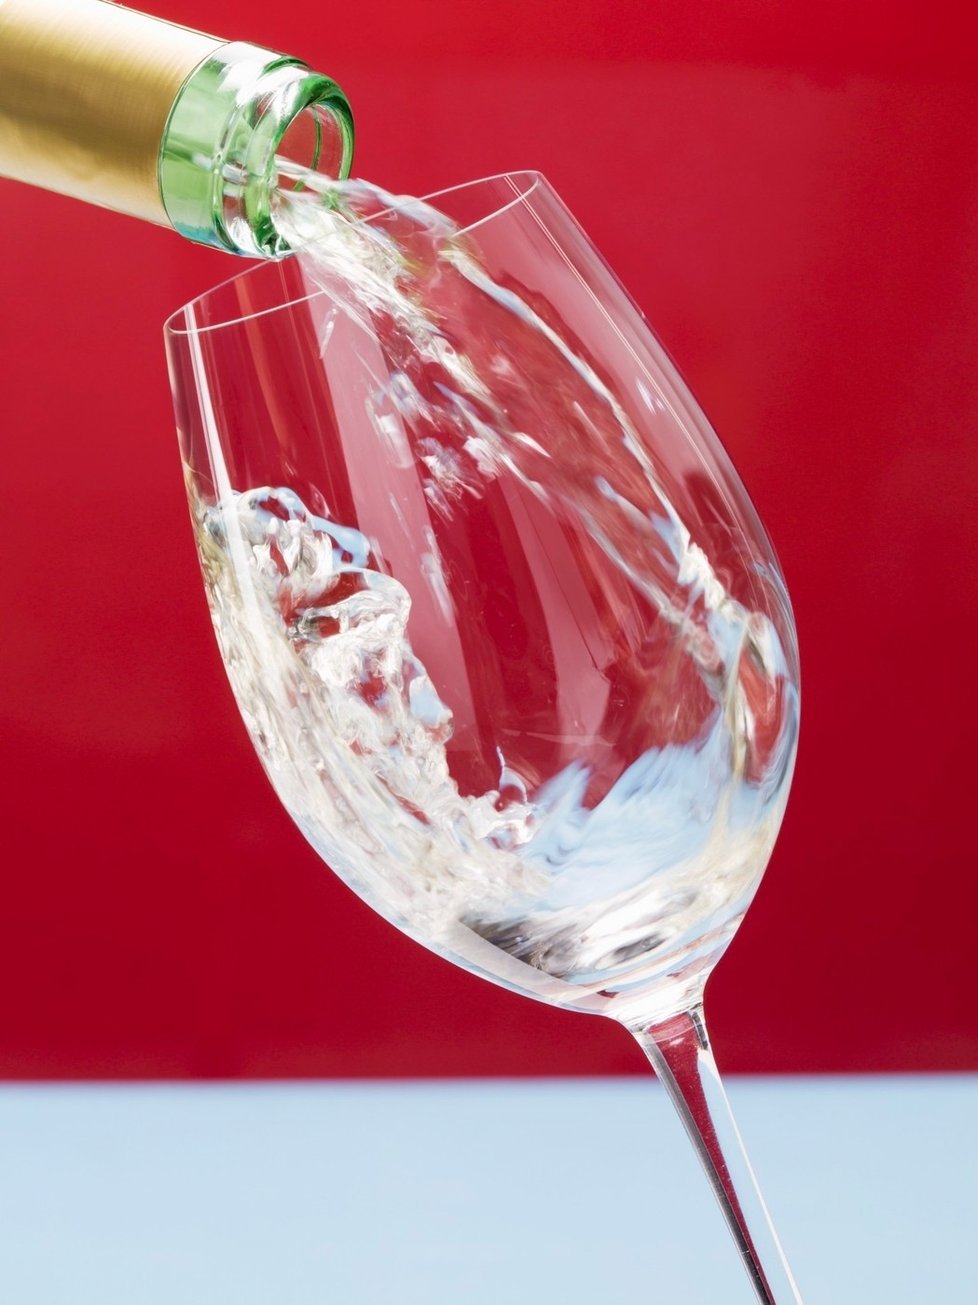 Vylouhovaný rozmarýn v bílém víně dokáže prý zázraky!